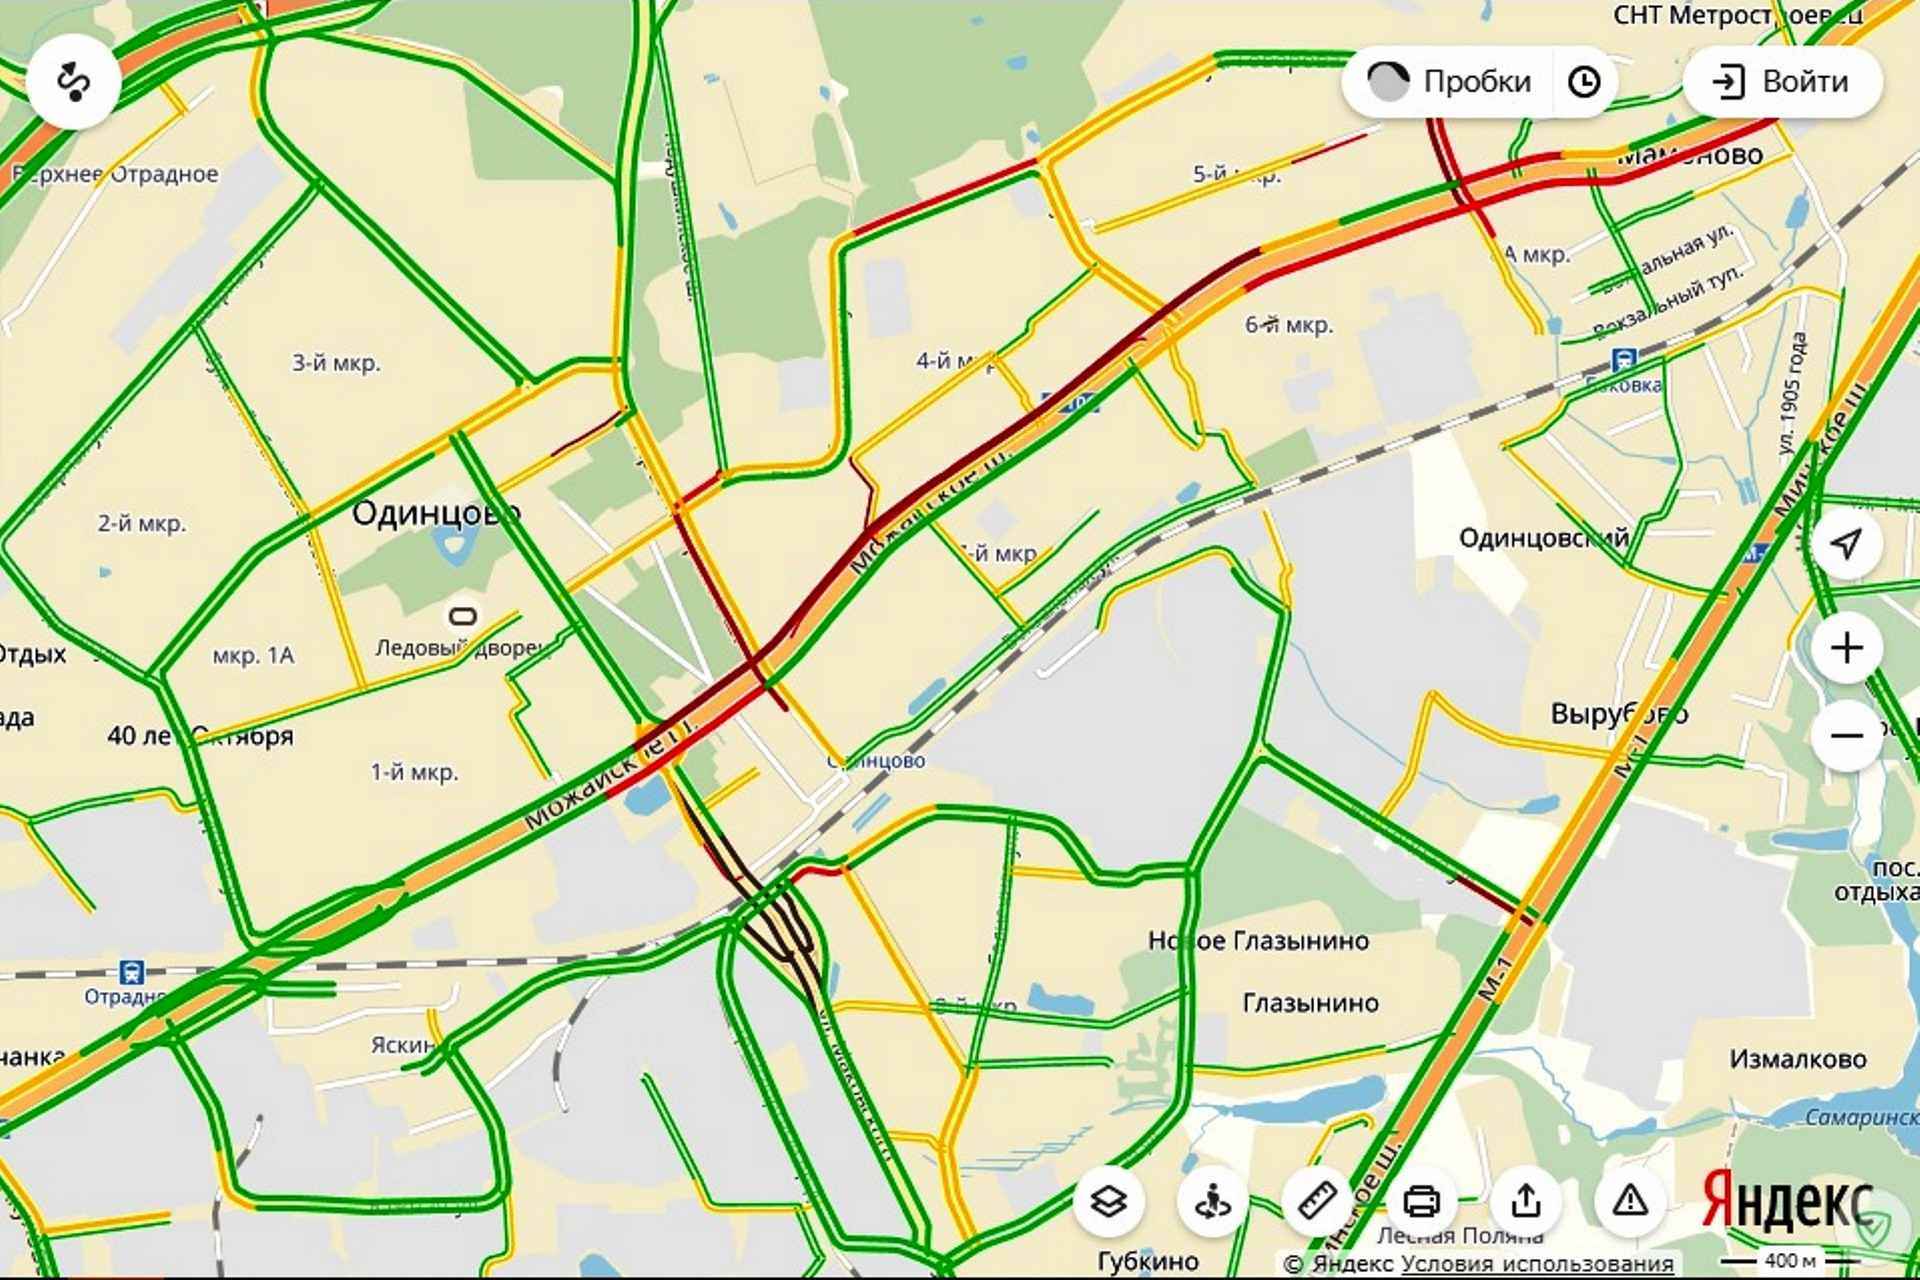 Пробки егорьевское шоссе сейчас карта смотреть онлайн бесплатно